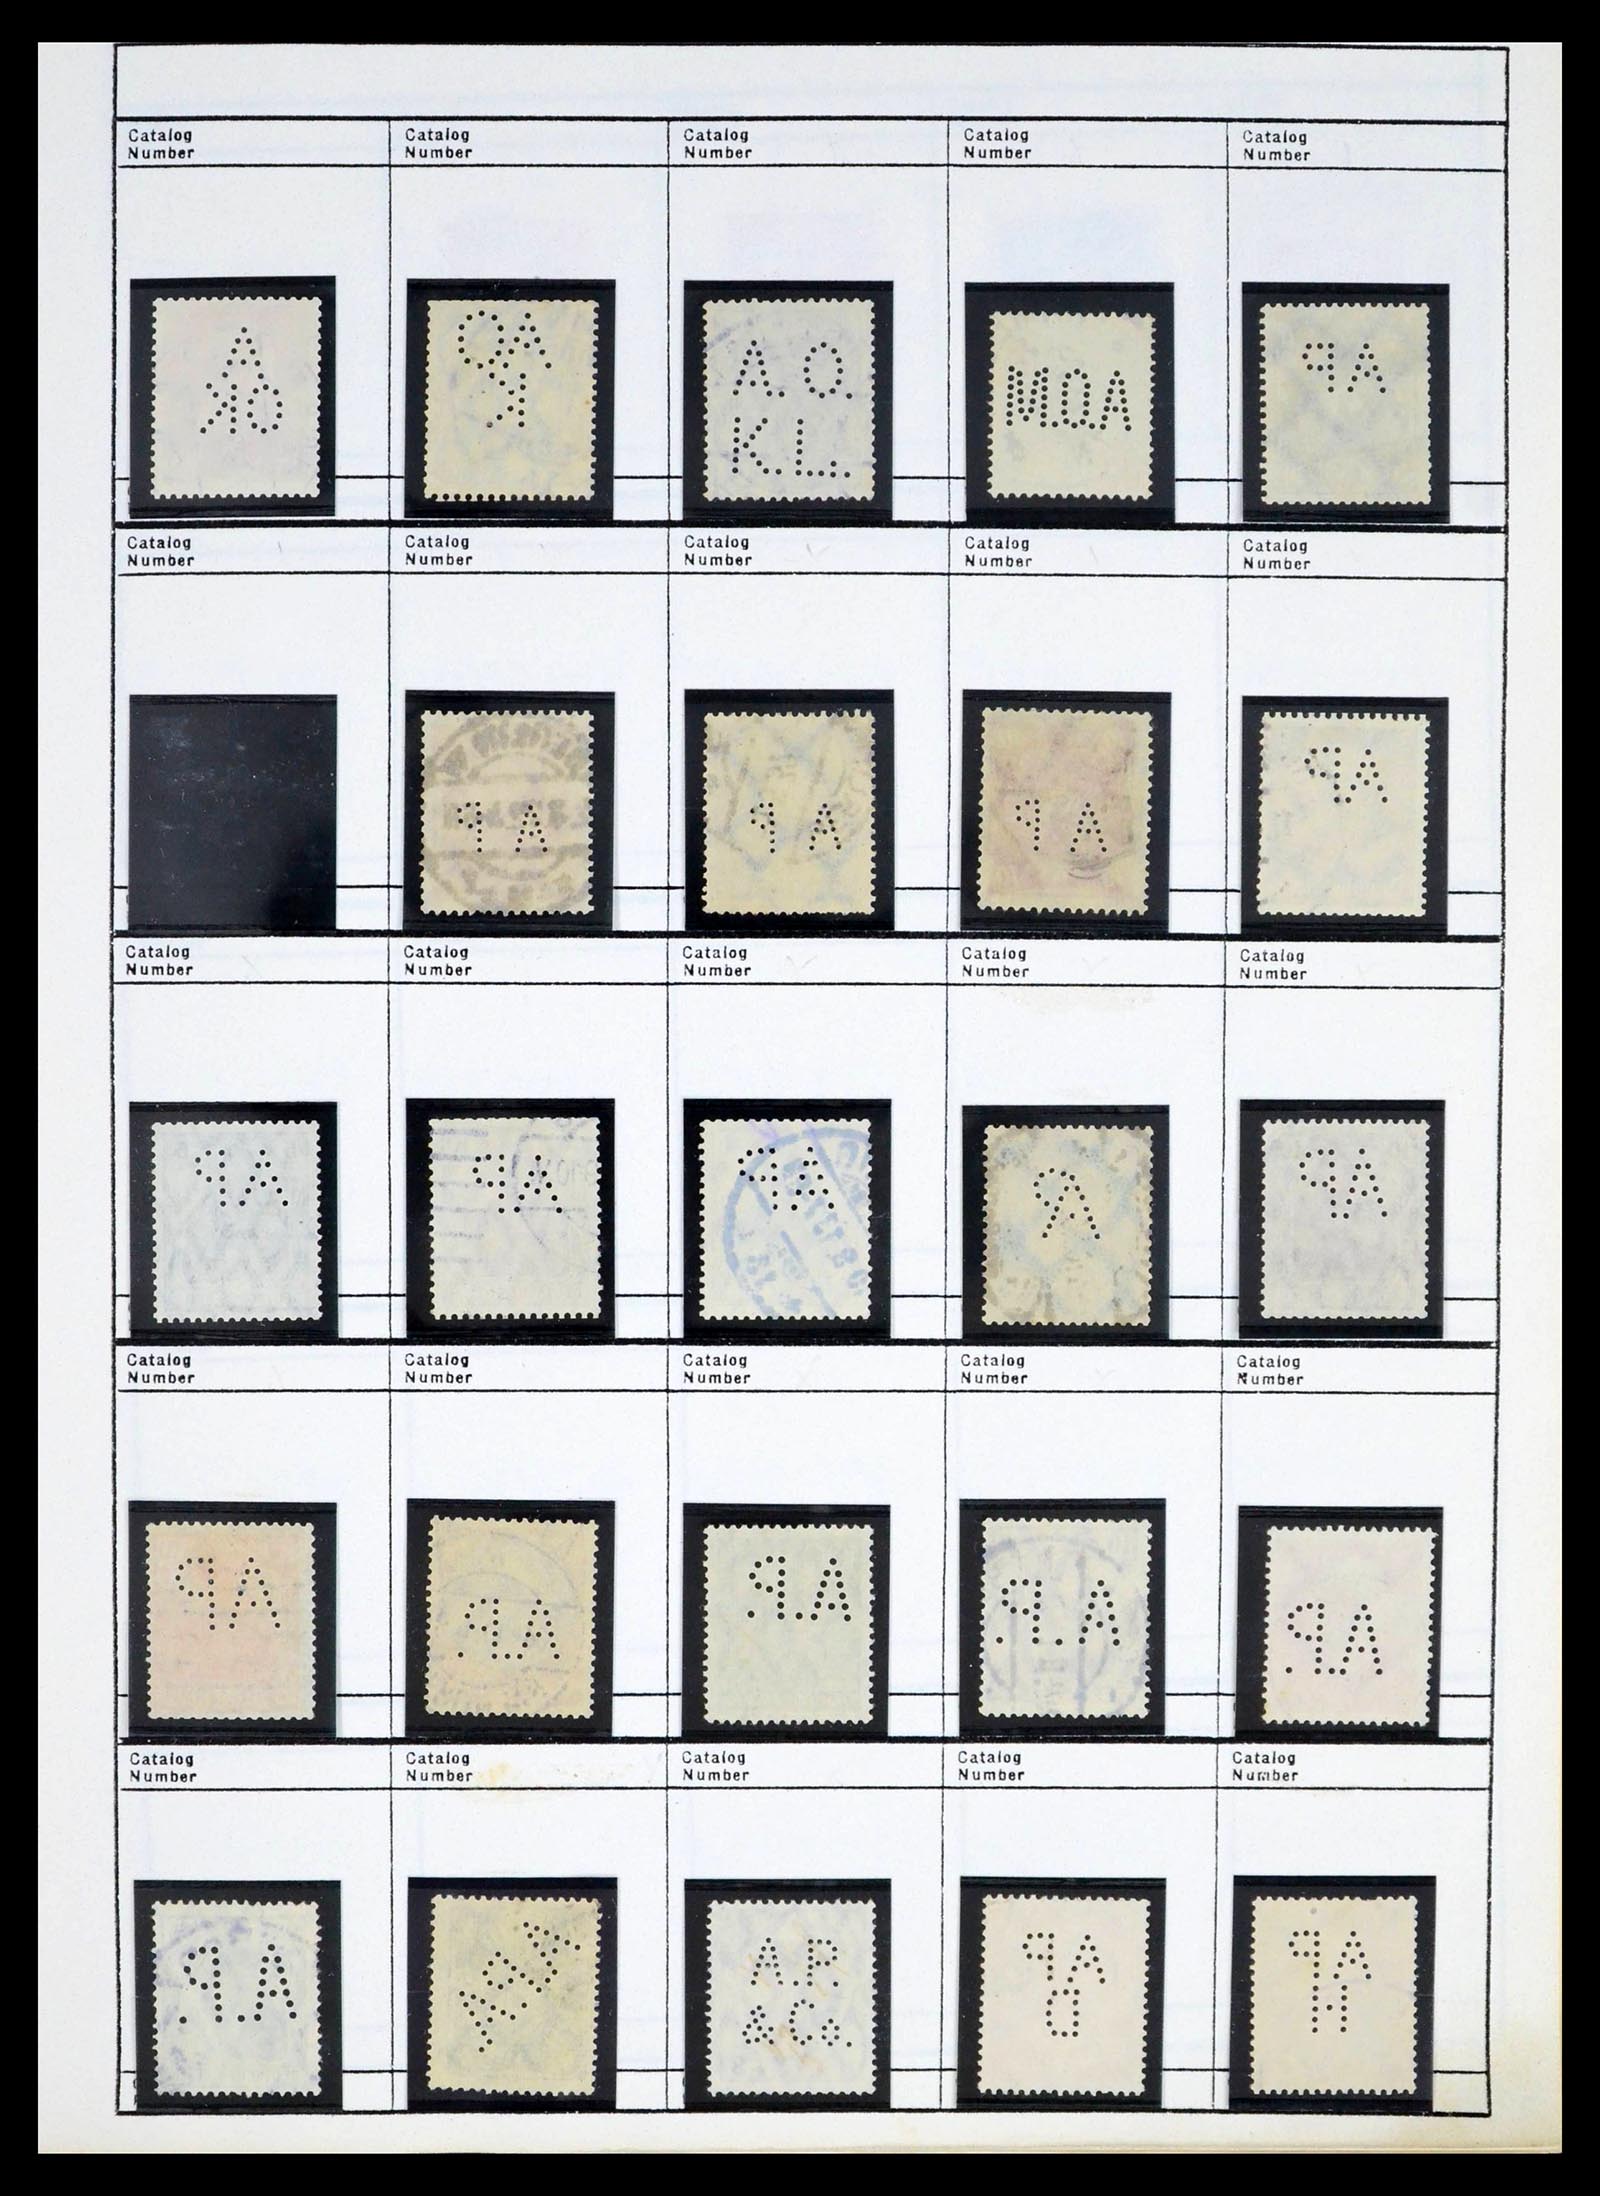 39480 0034 - Stamp collection 39480 German Reich perfins 1880-1955.